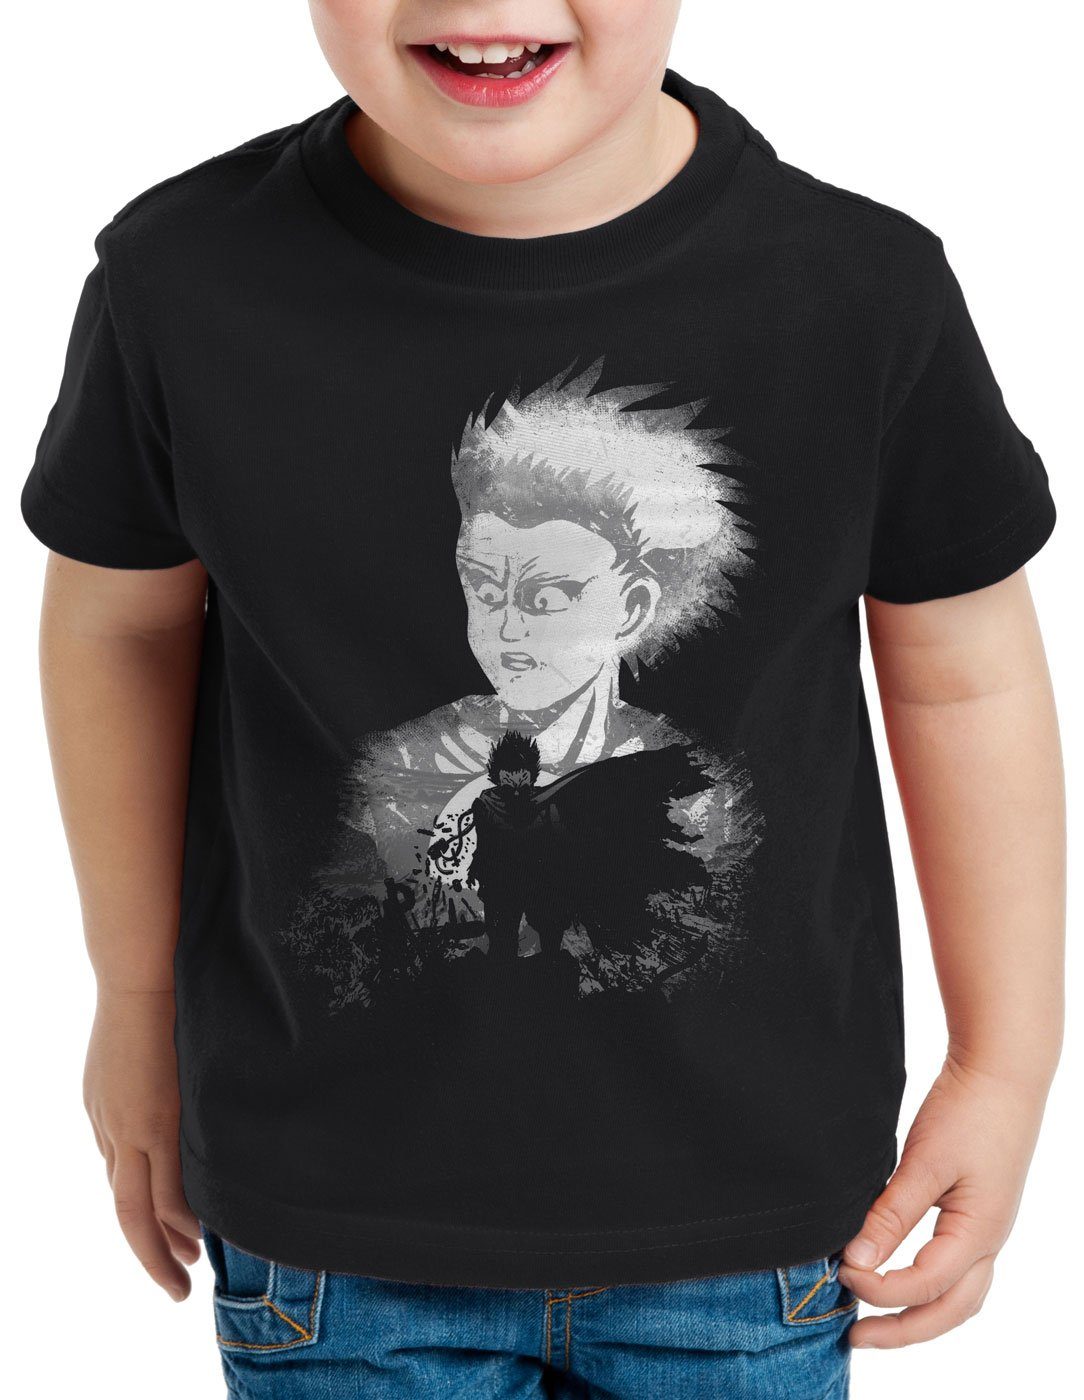 Kinder T-Shirt Print-Shirt Japan style3 Kaneda Anime Dark Akira